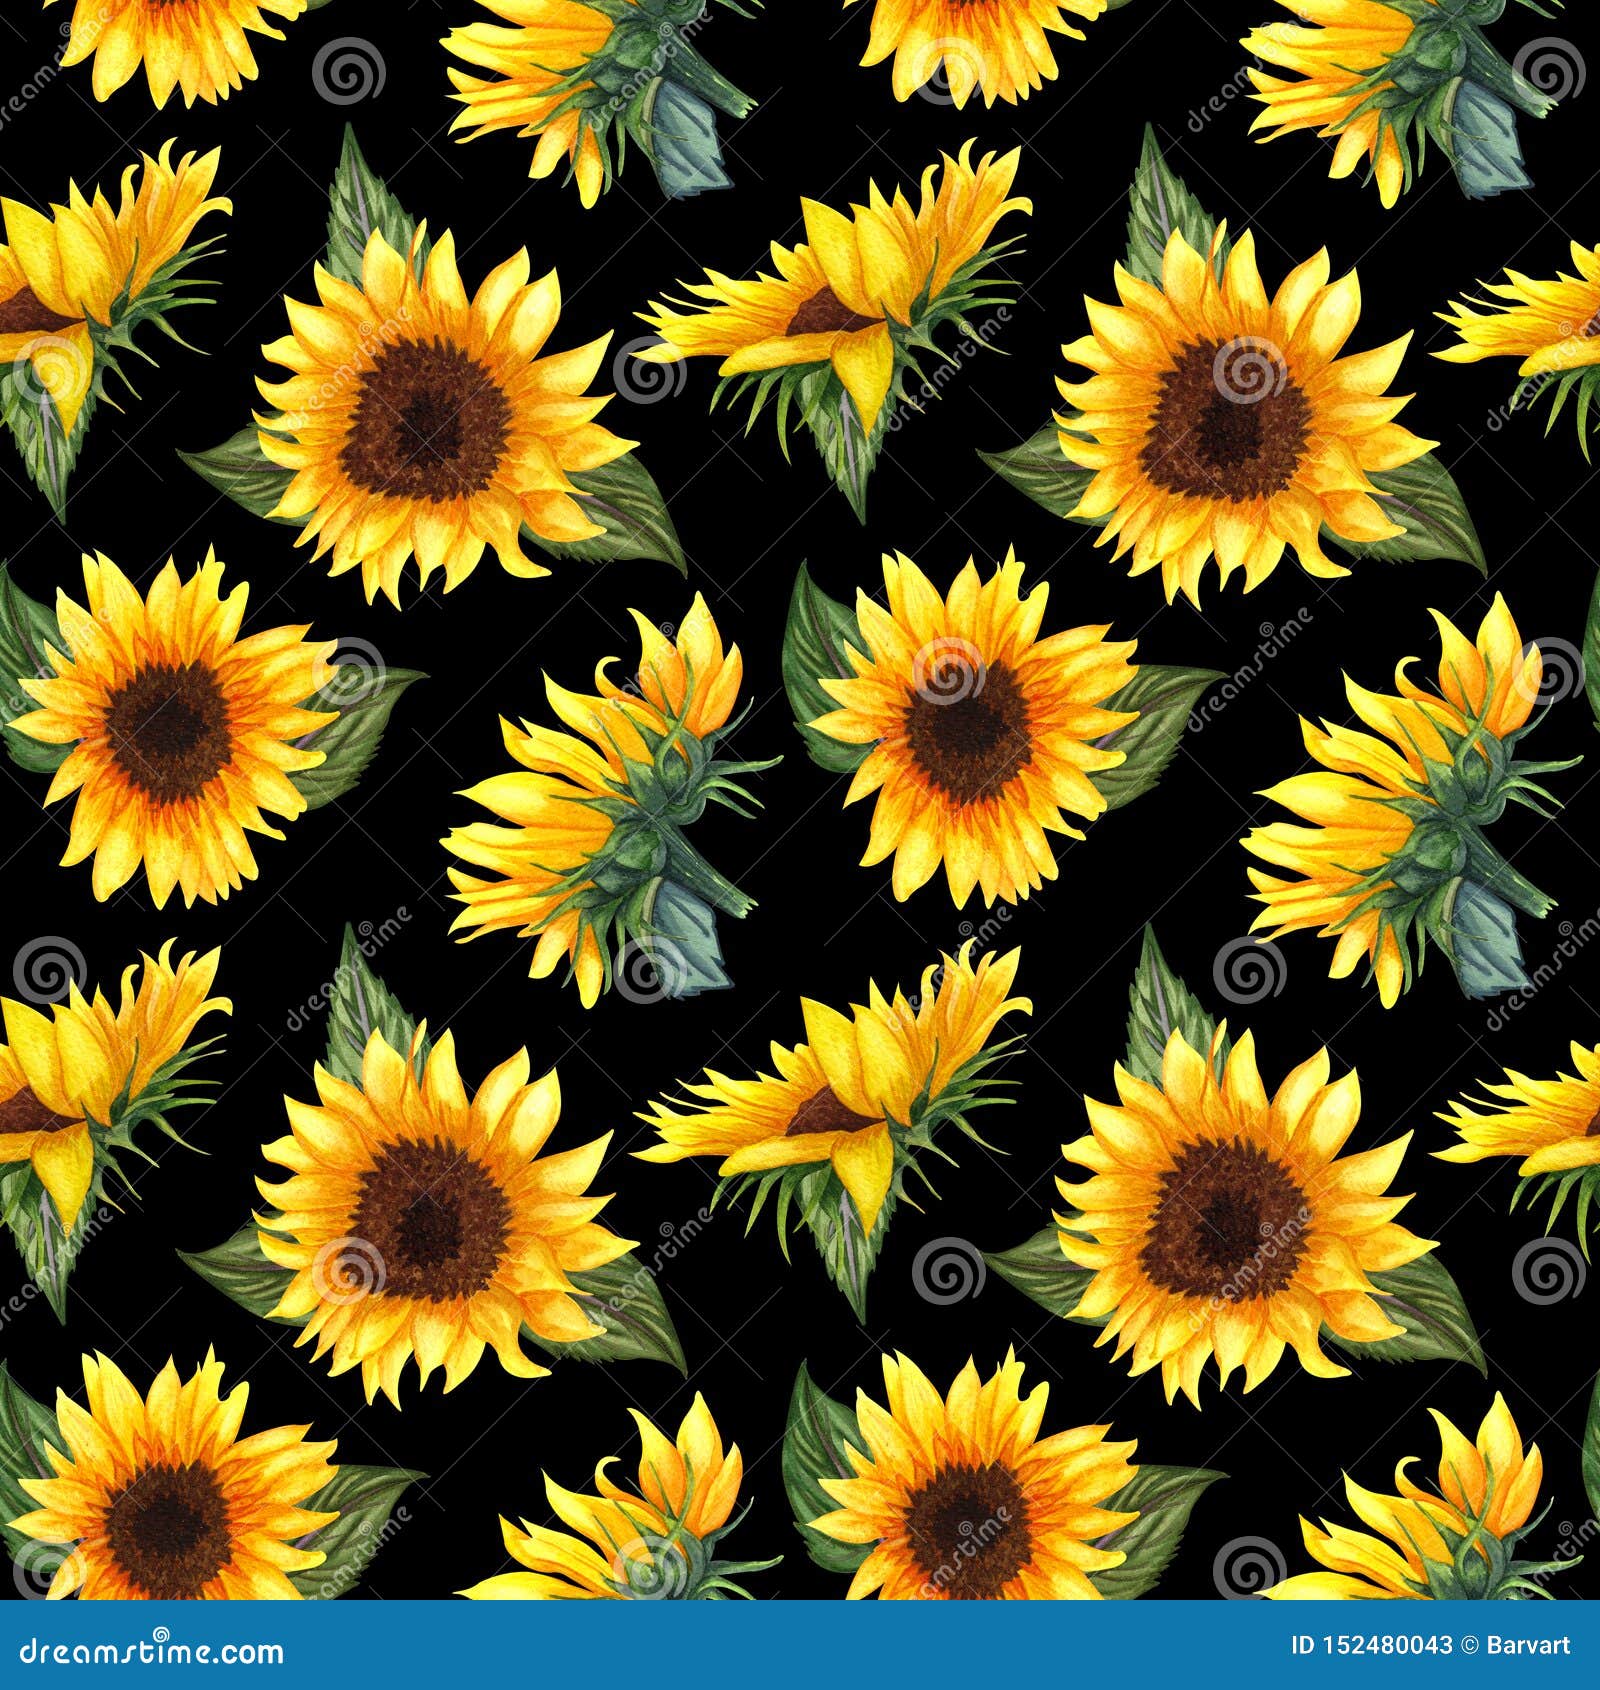 Sunflowers On Black 